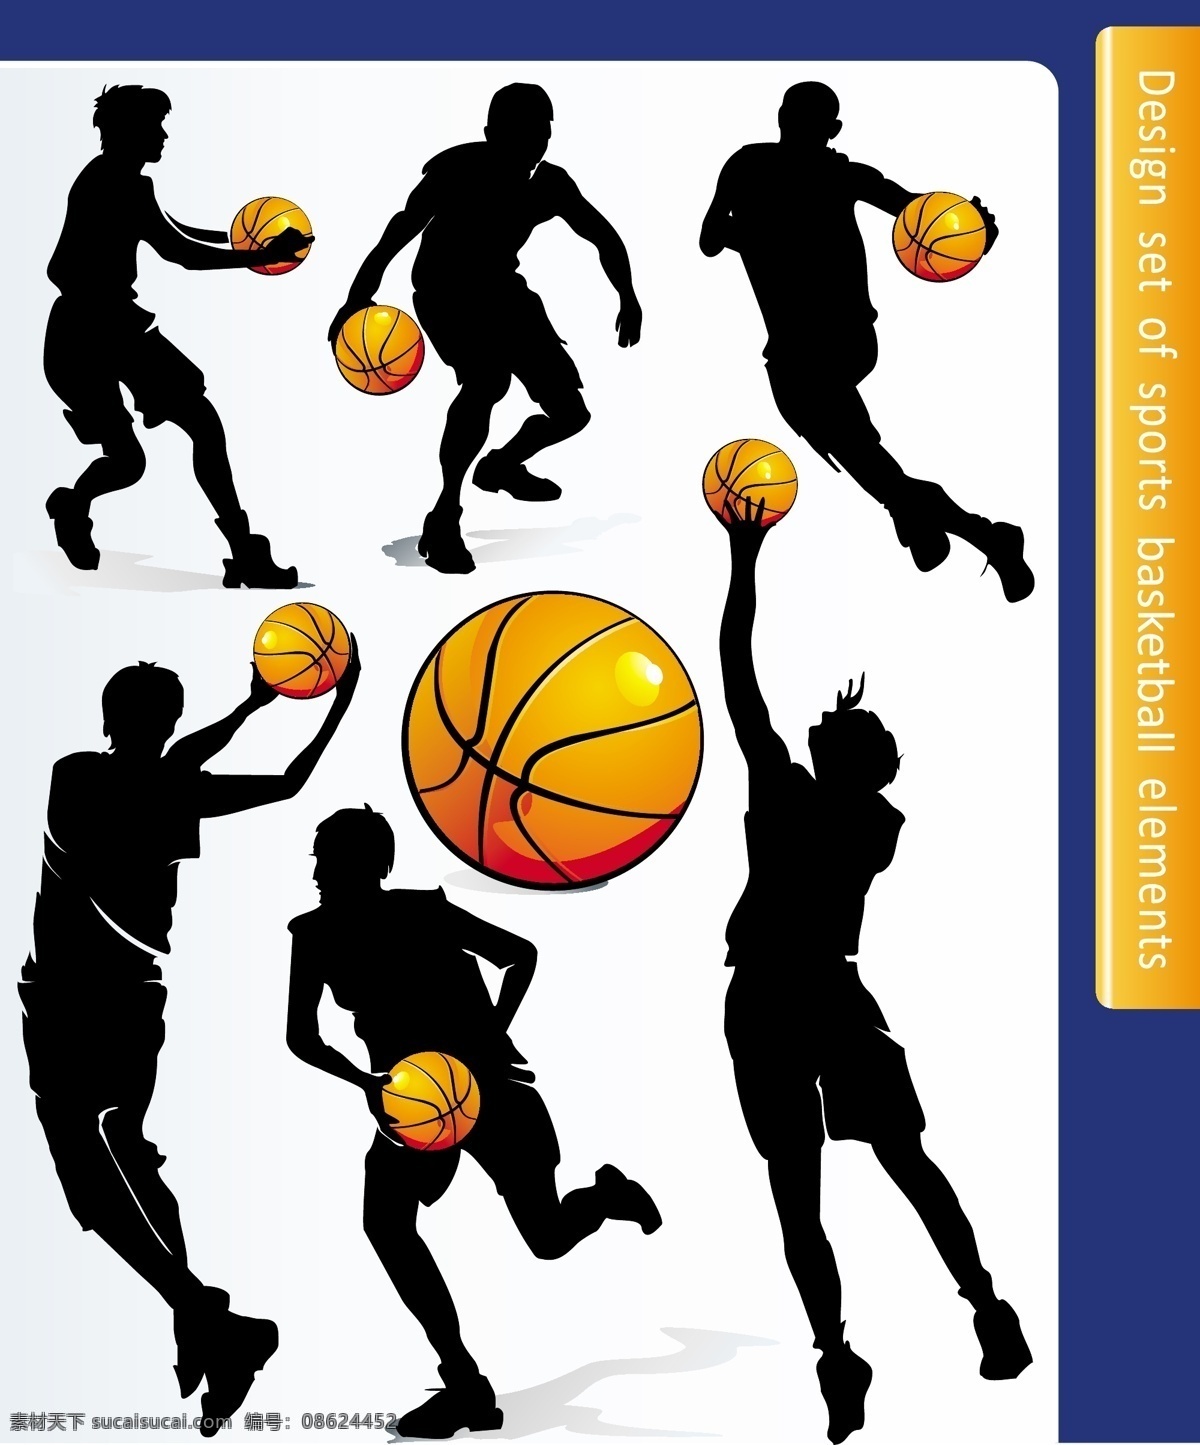 打篮球 篮球 篮球运动 人物剪影 体育 体育运动 文化艺术 运动 运动剪影 动作 矢量 模板下载 打篮球动作 篮球剪影 篮球动作 psd源文件